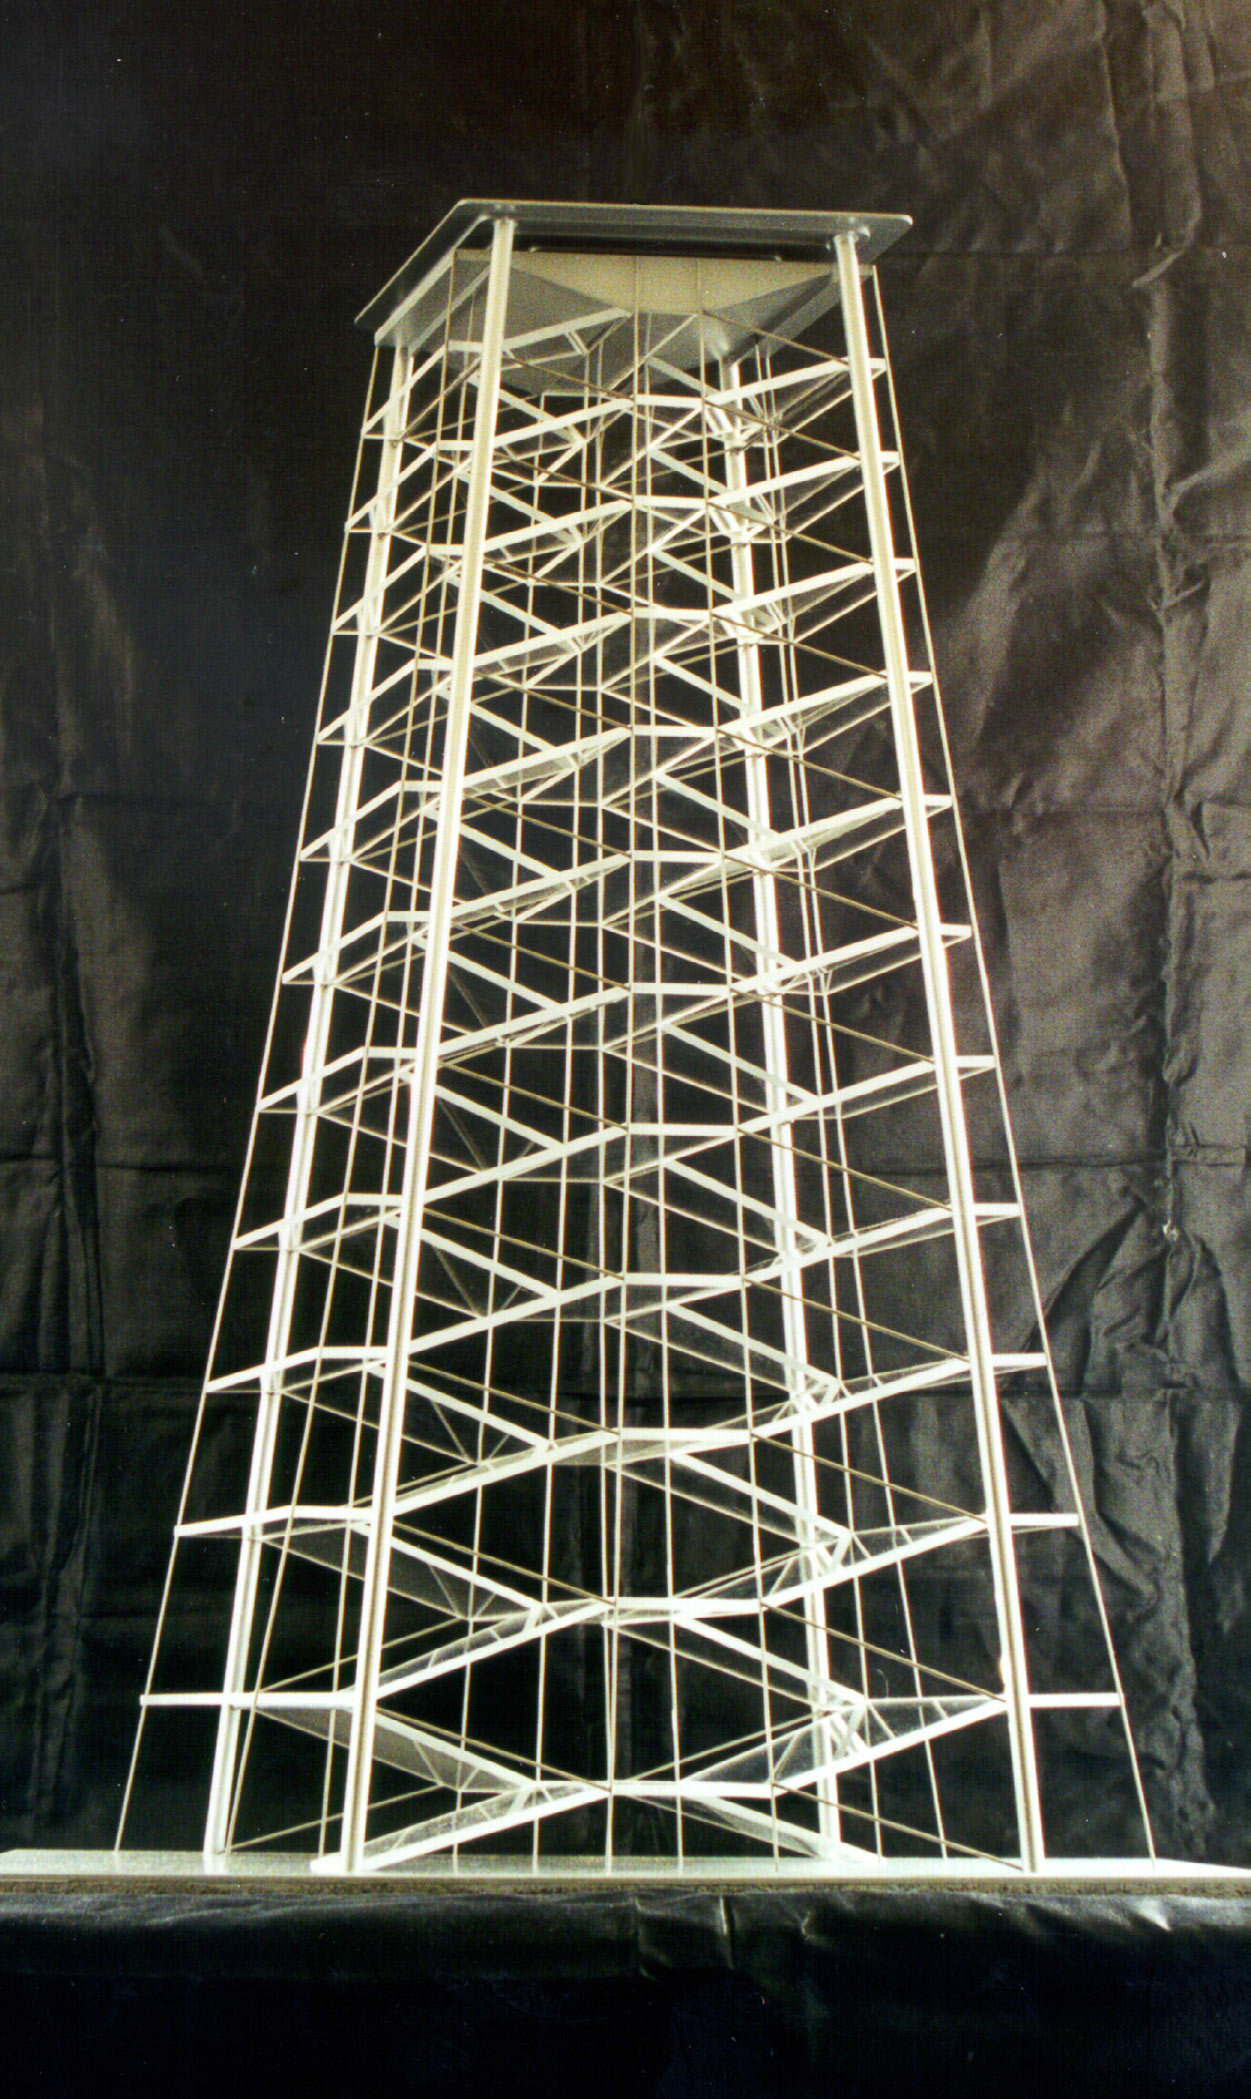 Veža výberov - 600m, 1995. Základný modul je vo veži umiestnený 11-krát nad sebou.